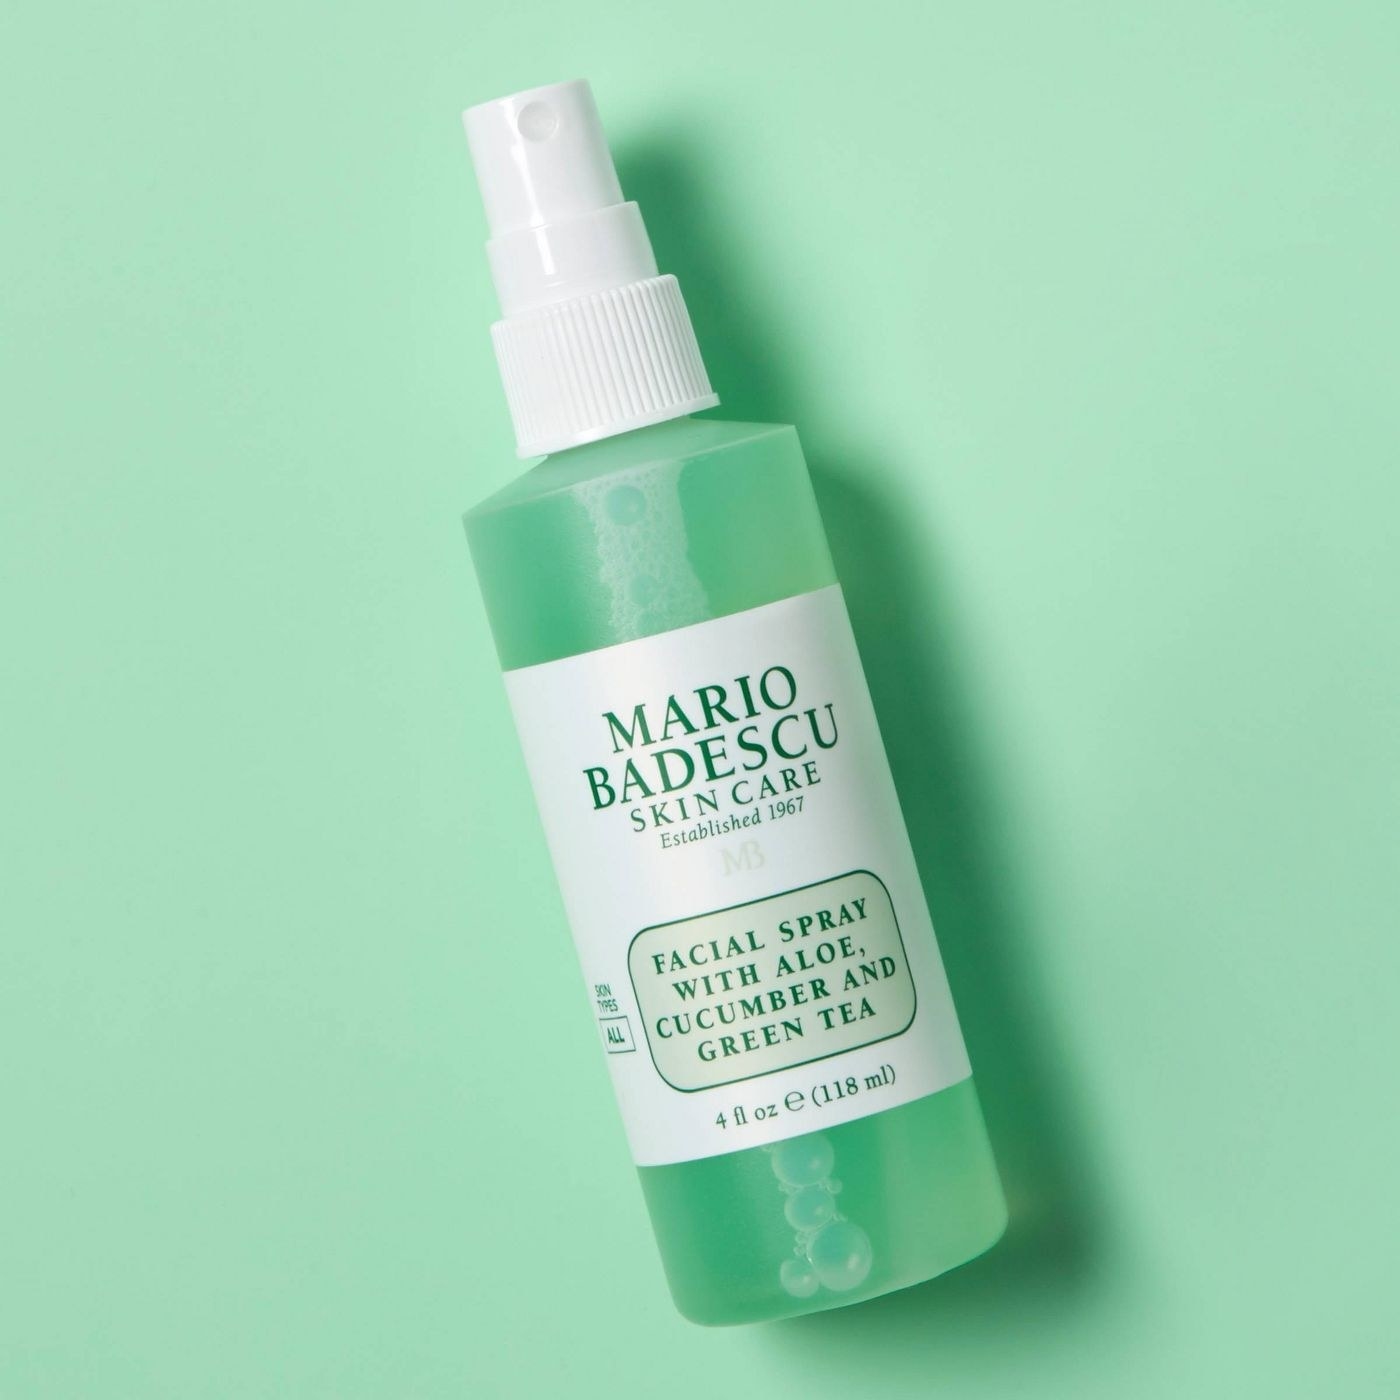 The Mario Badescu skincare facial spray with aloe, cucumber and green tea